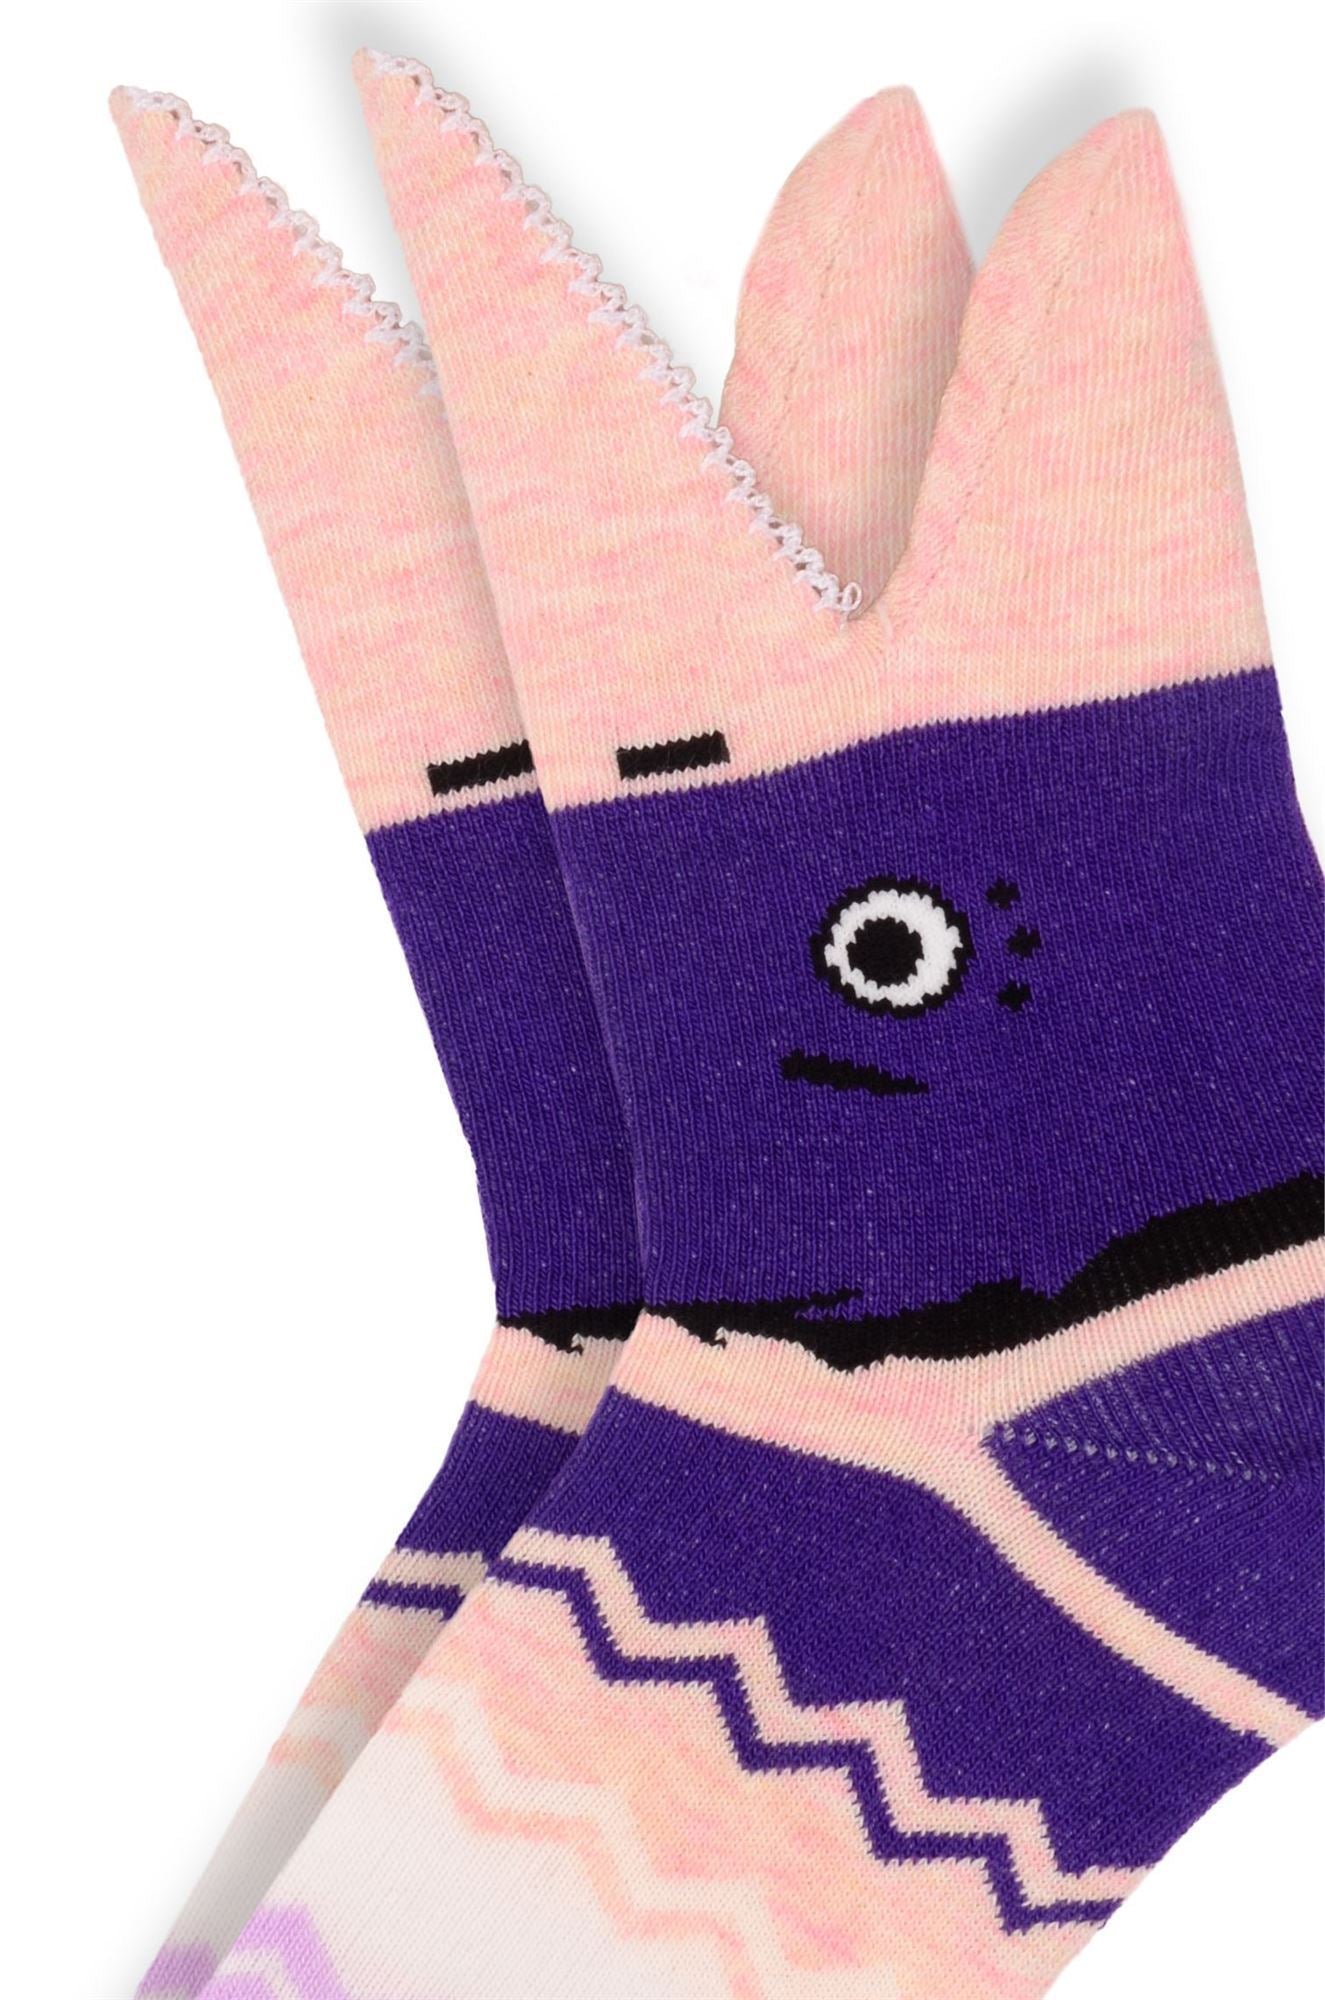 GONE FISHIN' GIRLS 3-pack socks